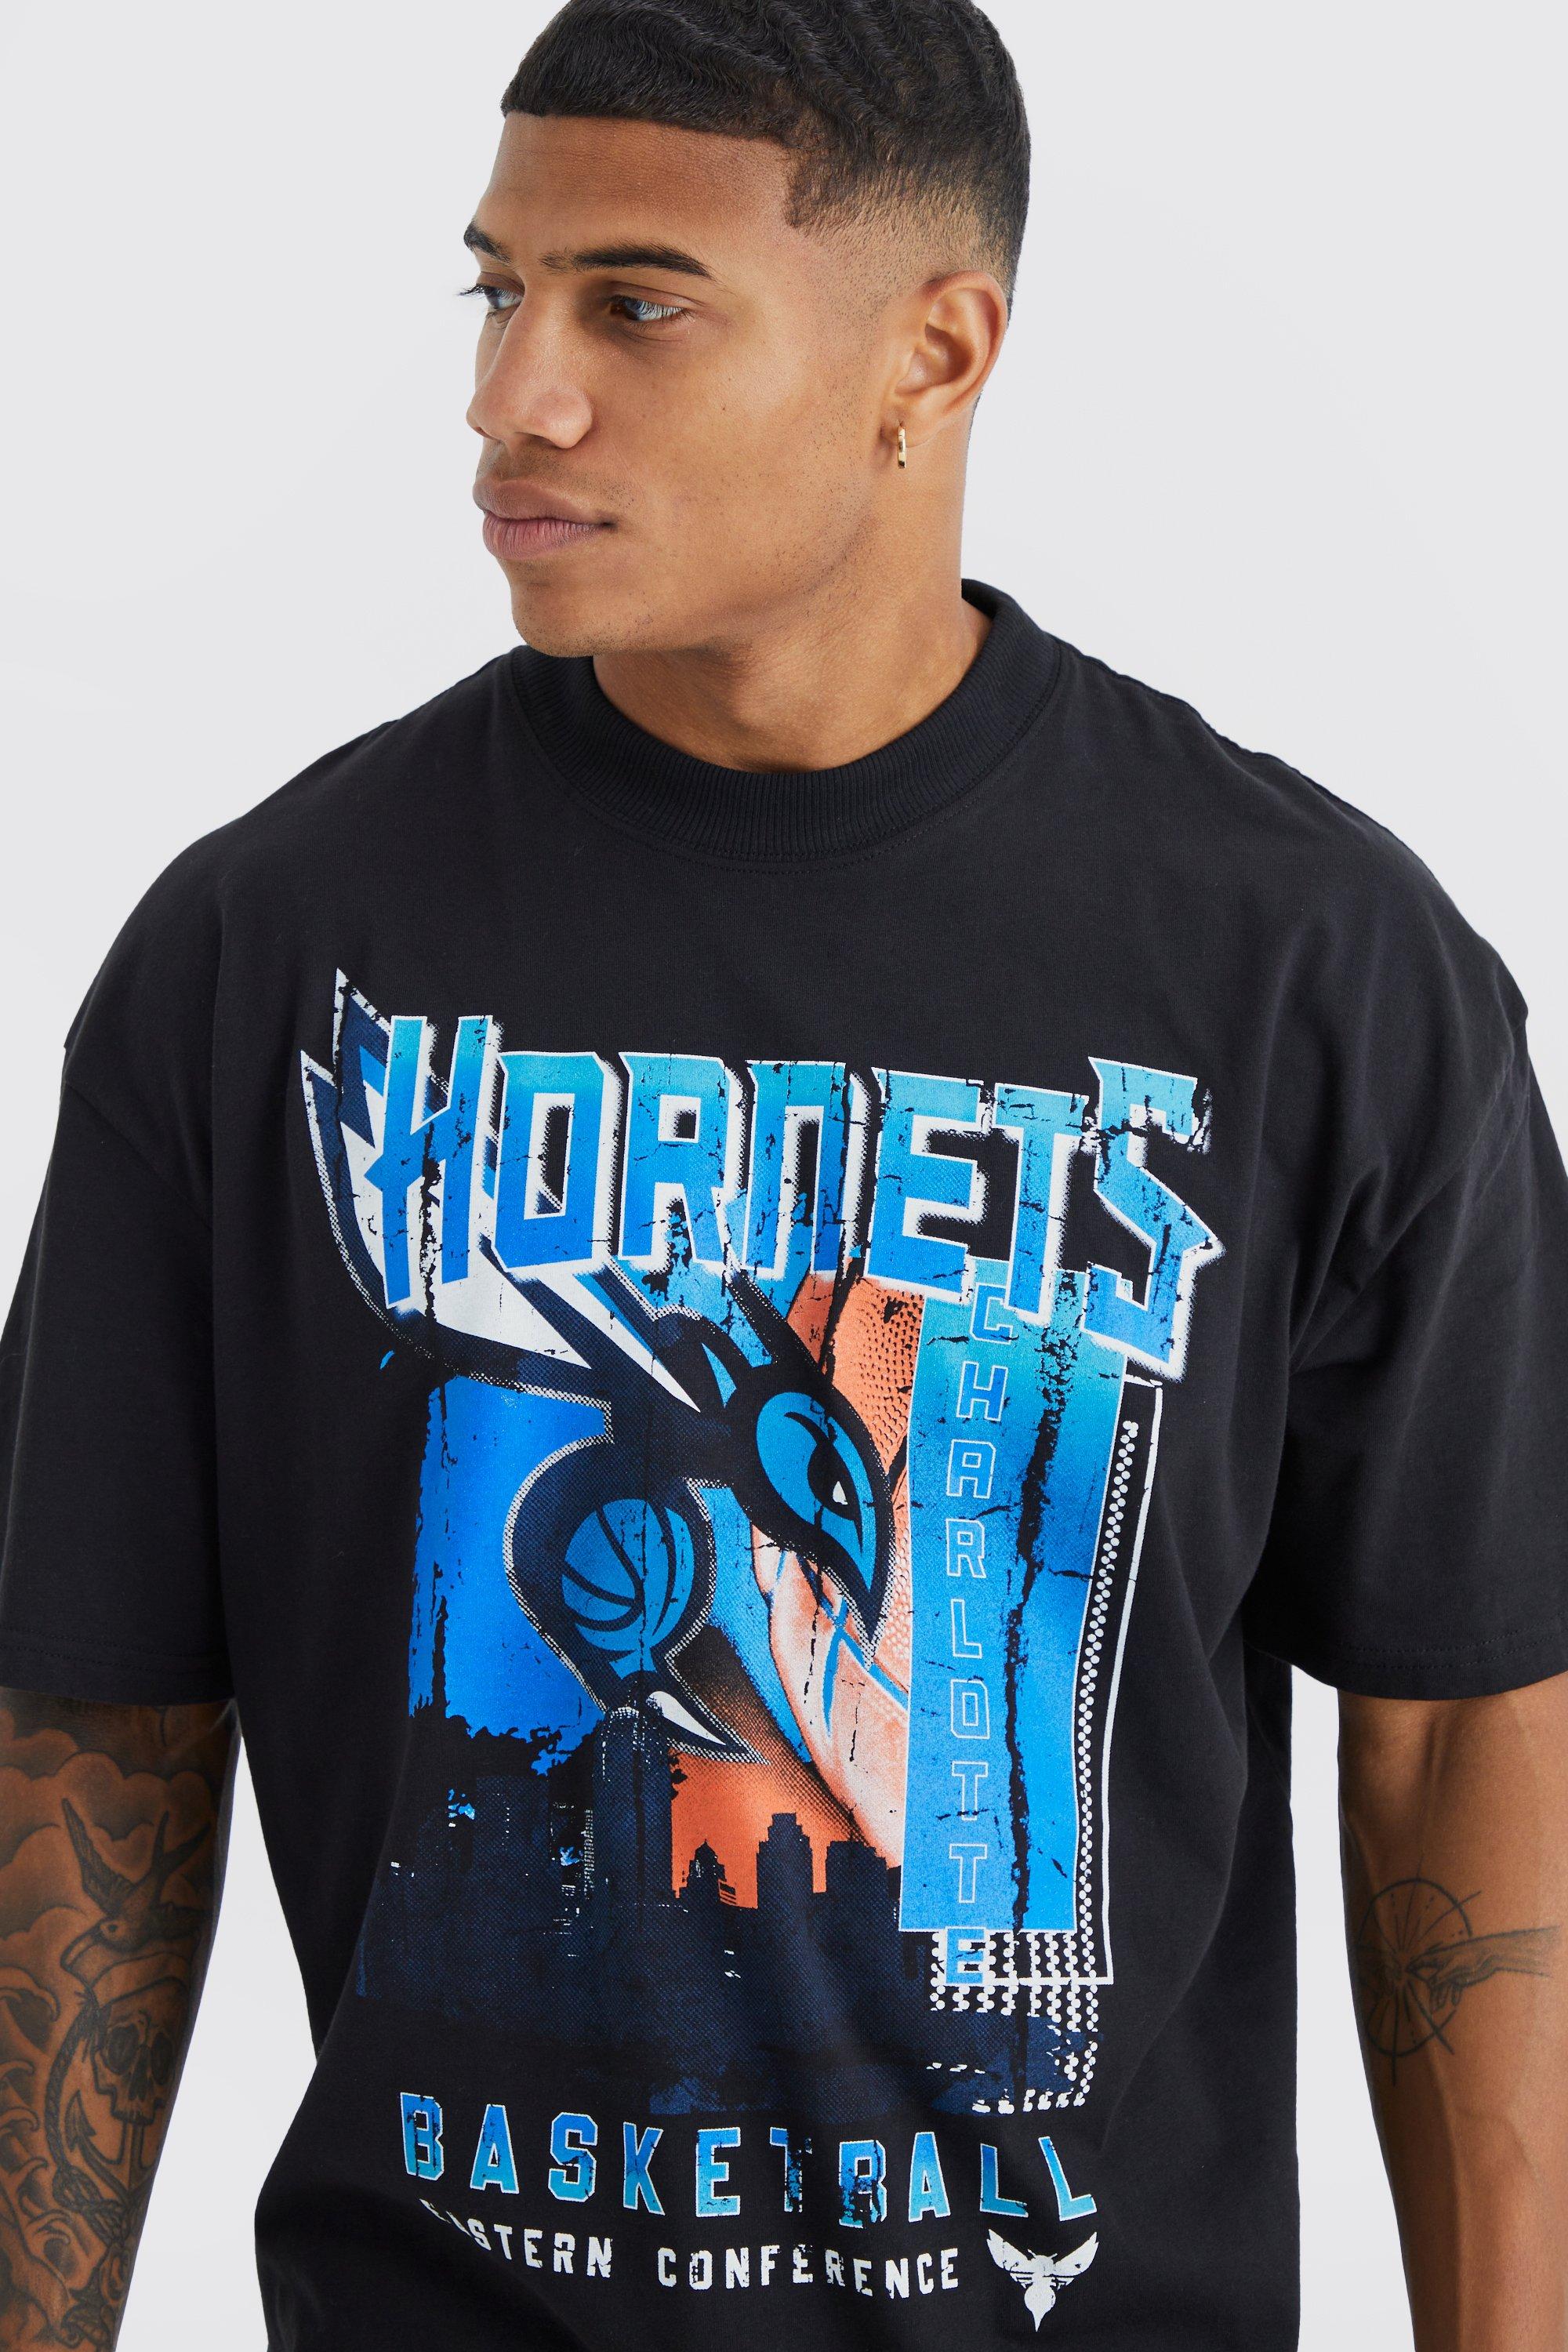 Charlotte Hornets Black T-Shirt - Unisex - 100% Cotton - S, M, L, XL